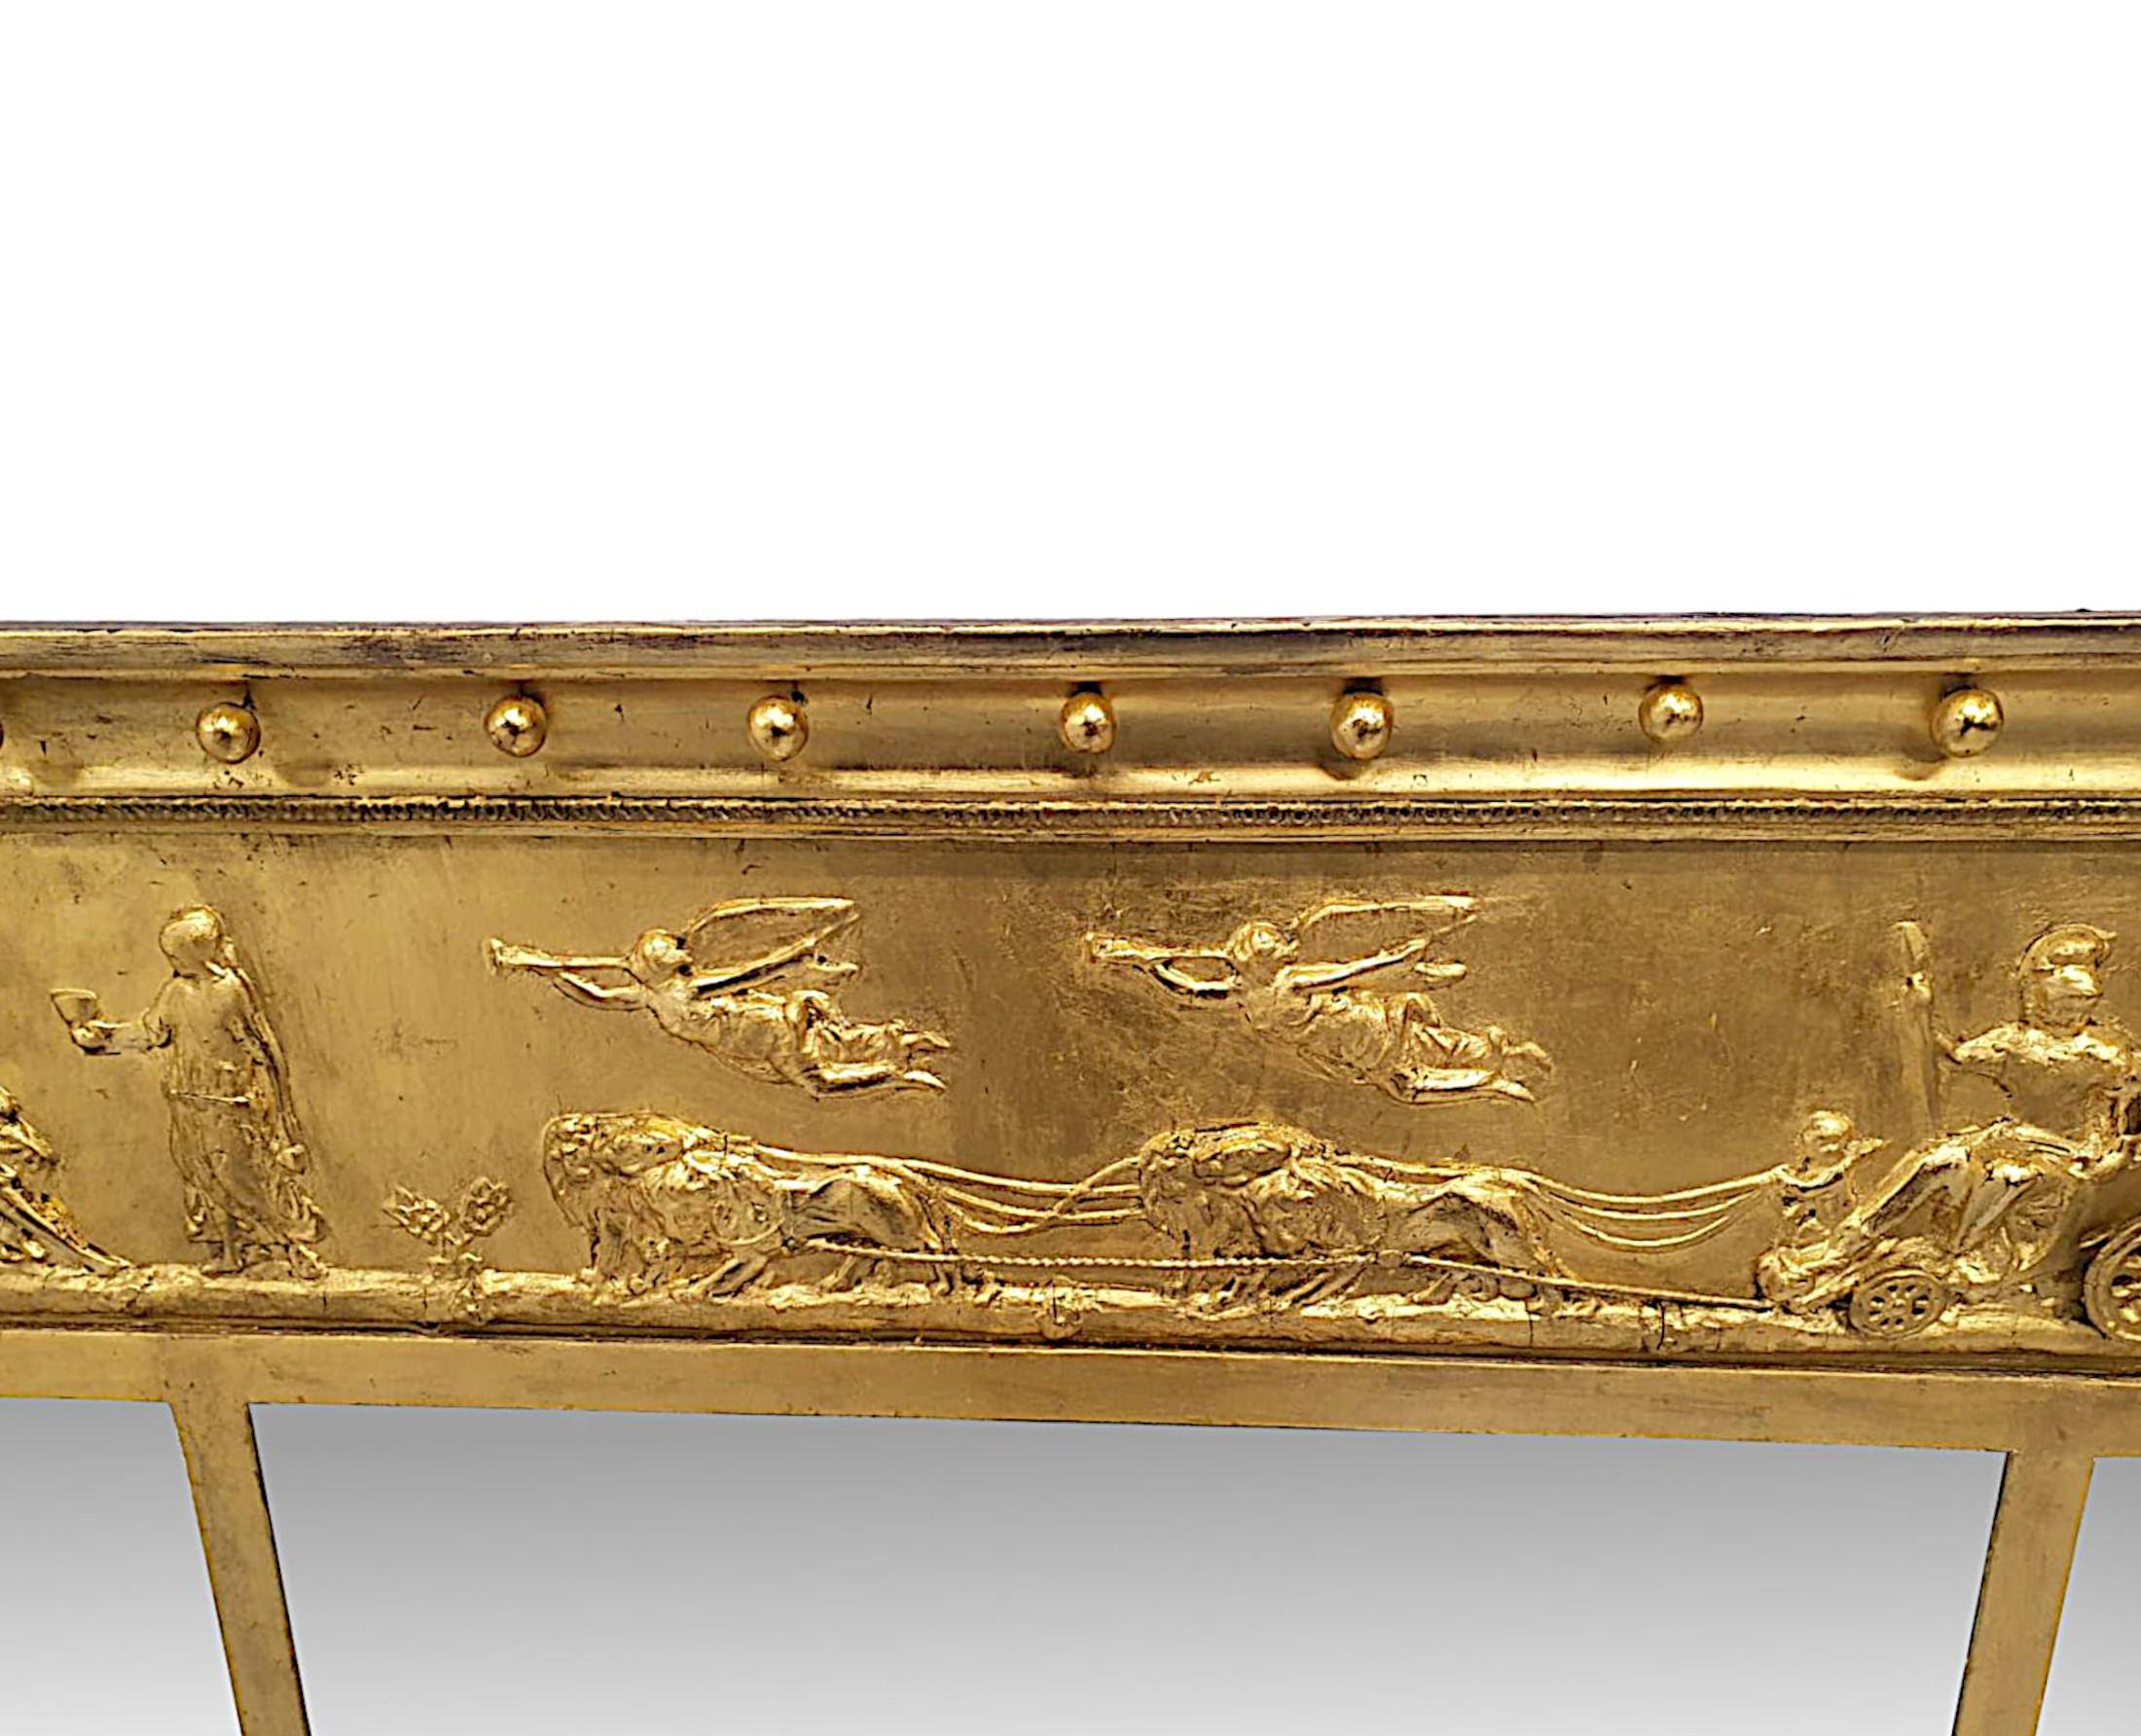 Eine fabelhafte späten 19. Jahrhundert vergoldetes Holz overmantle compartmental Spiegel in der Art von Adams.  Die fein von Hand geschnitzt, geformt und kannelierte Vergoldung Rahmen mit aufgebrachten Blumenkopf Paterae, Ei und Dart Detail in der